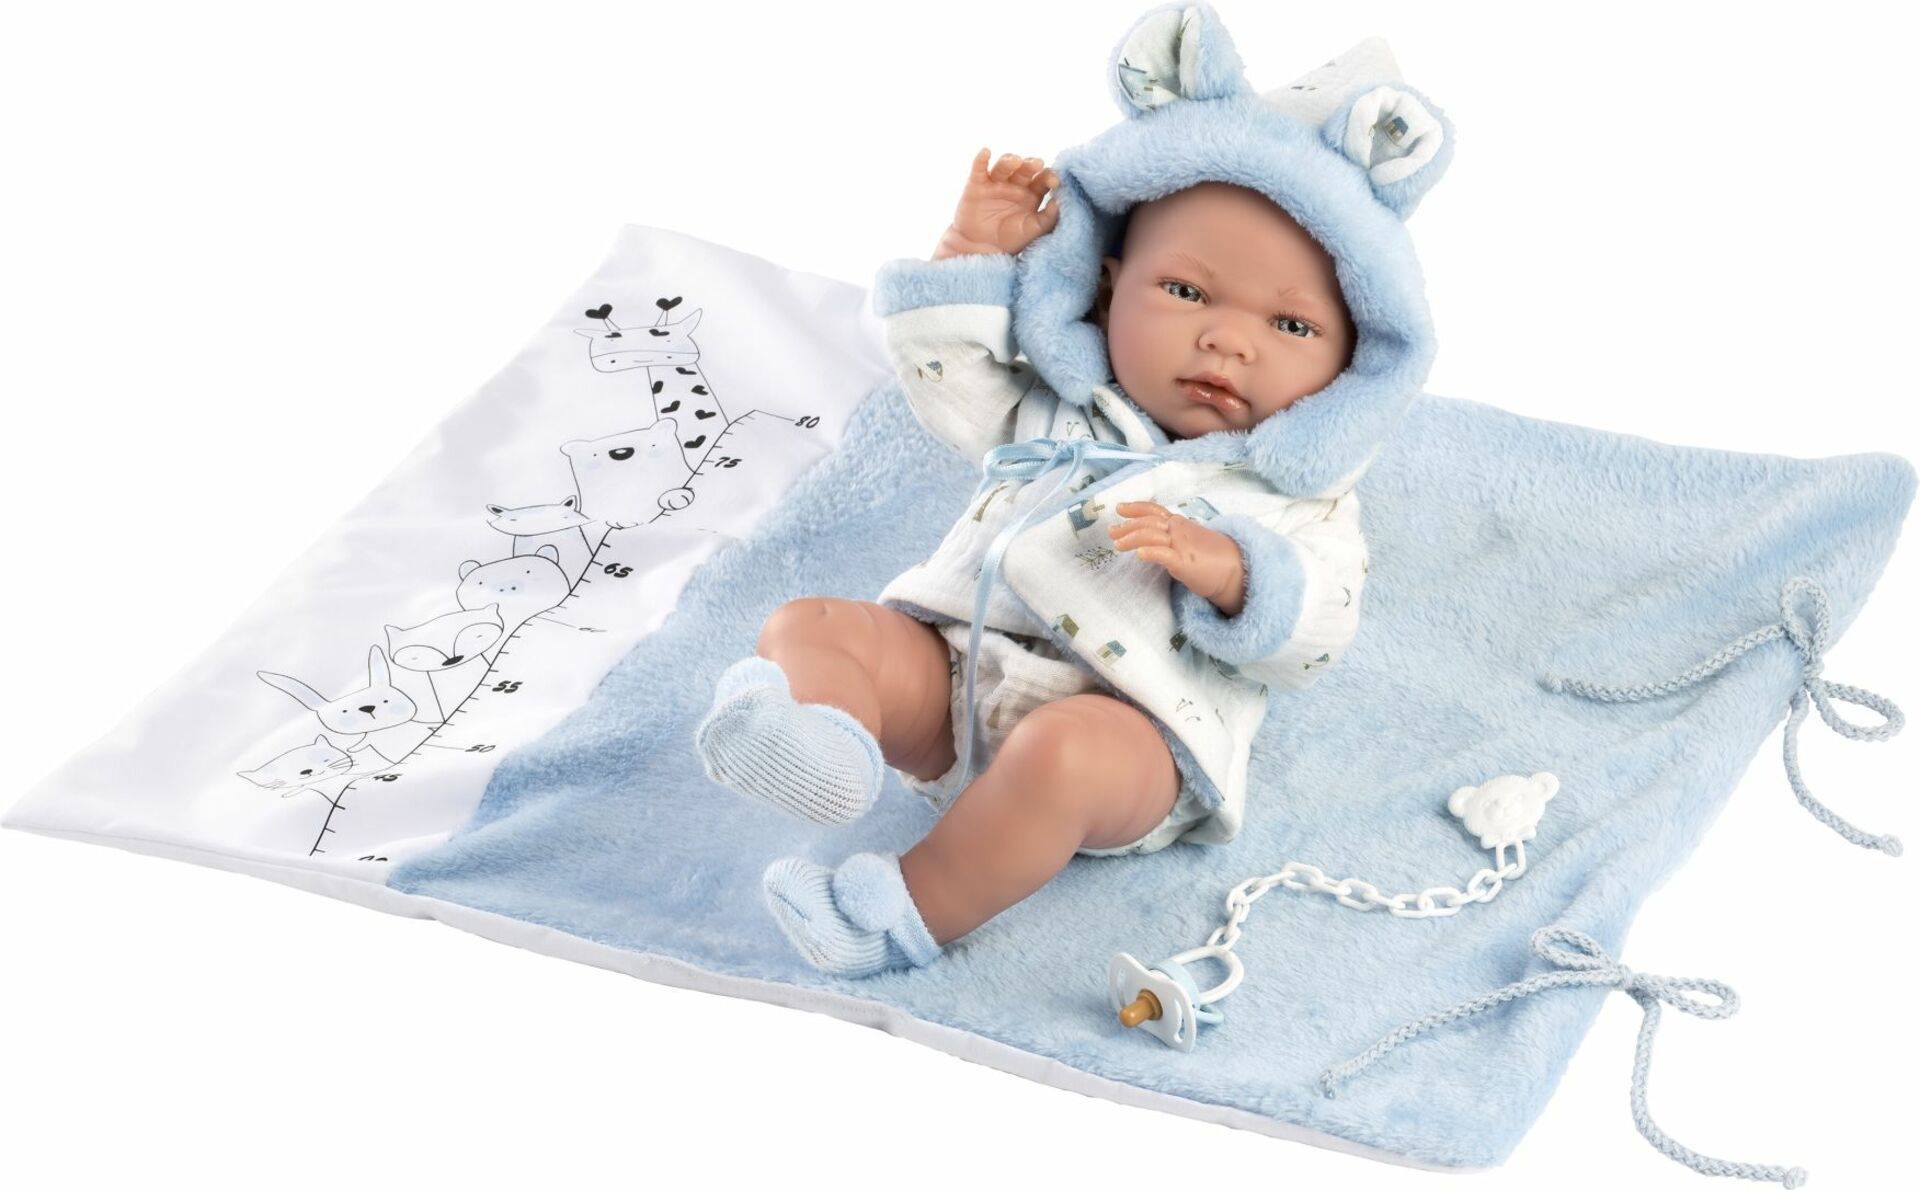 Llorens 73897 NEW BORN CHLAPEK - realistická panenka miminko s celovinylovým tělem - 40